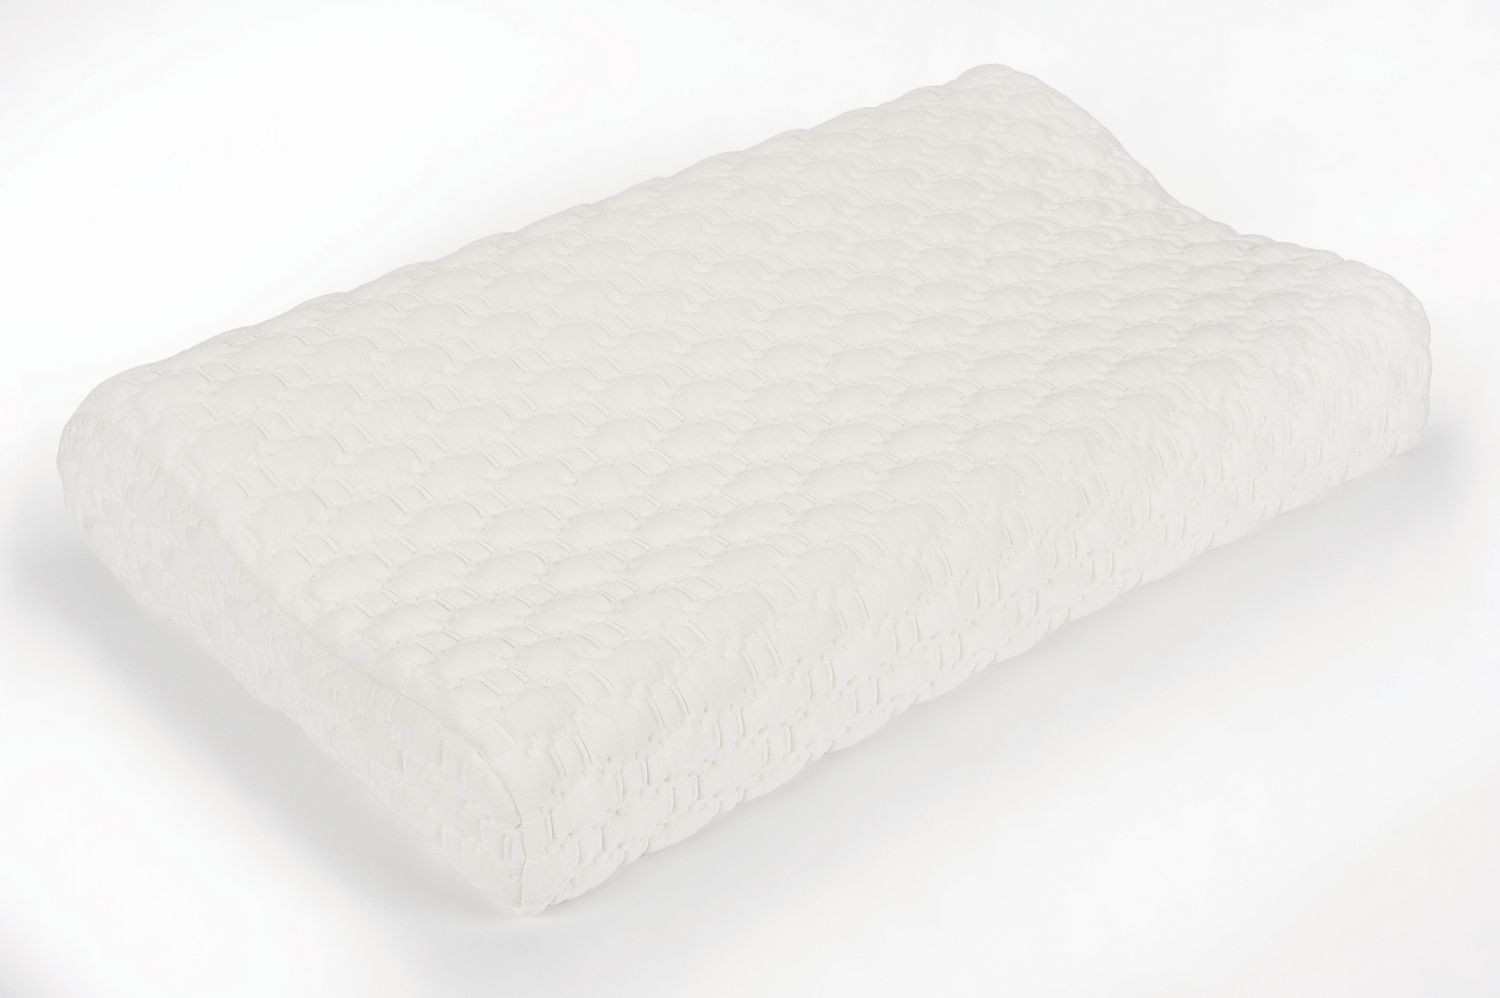 obusforme comfort sleep traditional pillow